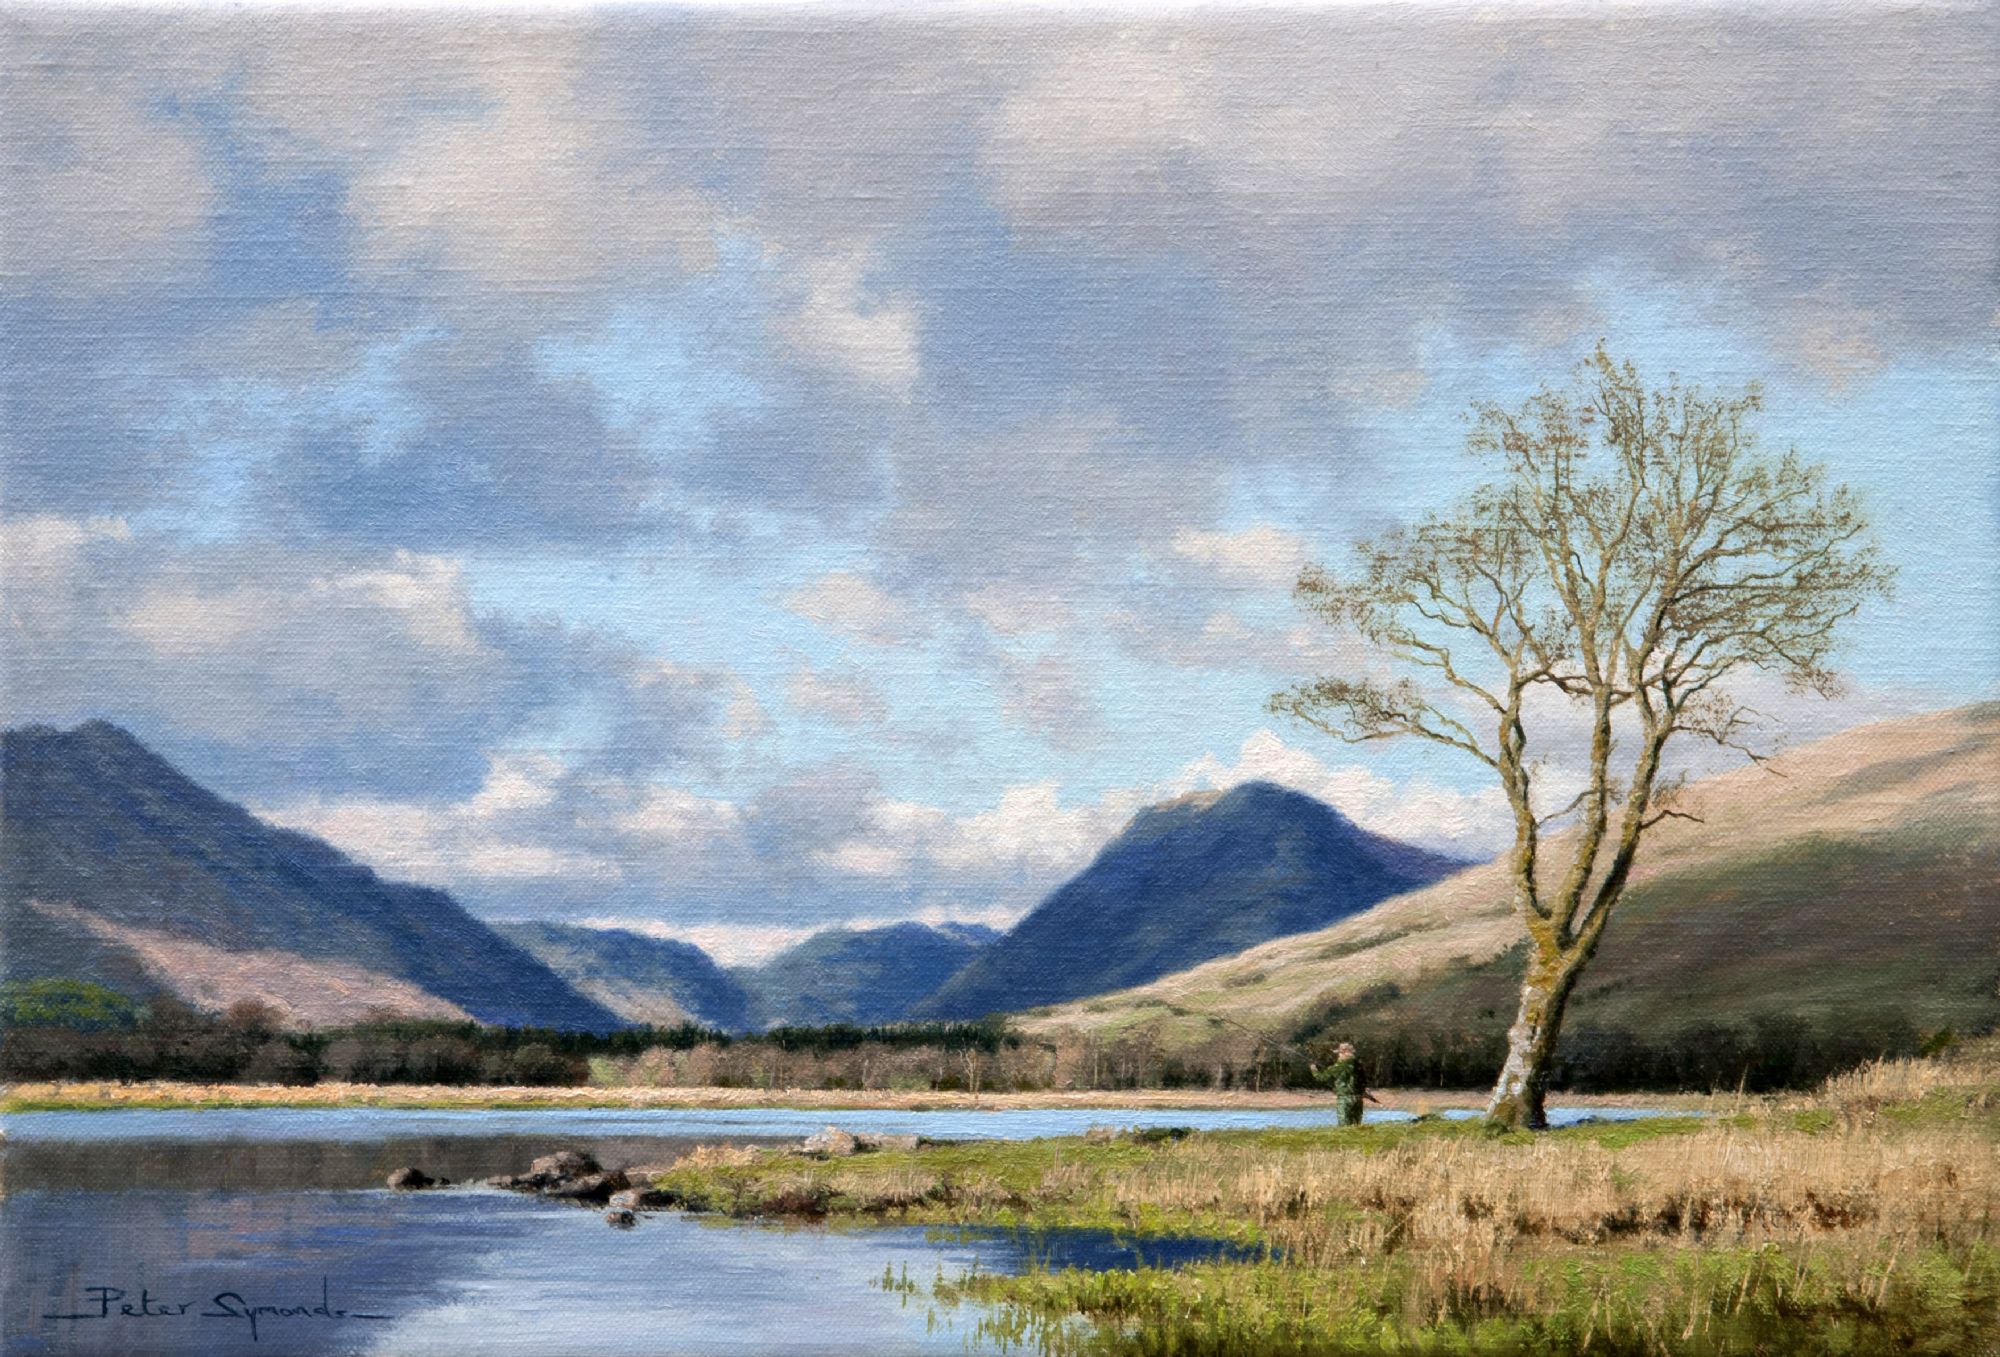 Peter Symonds artist Scottish landscapes wild places natural environment